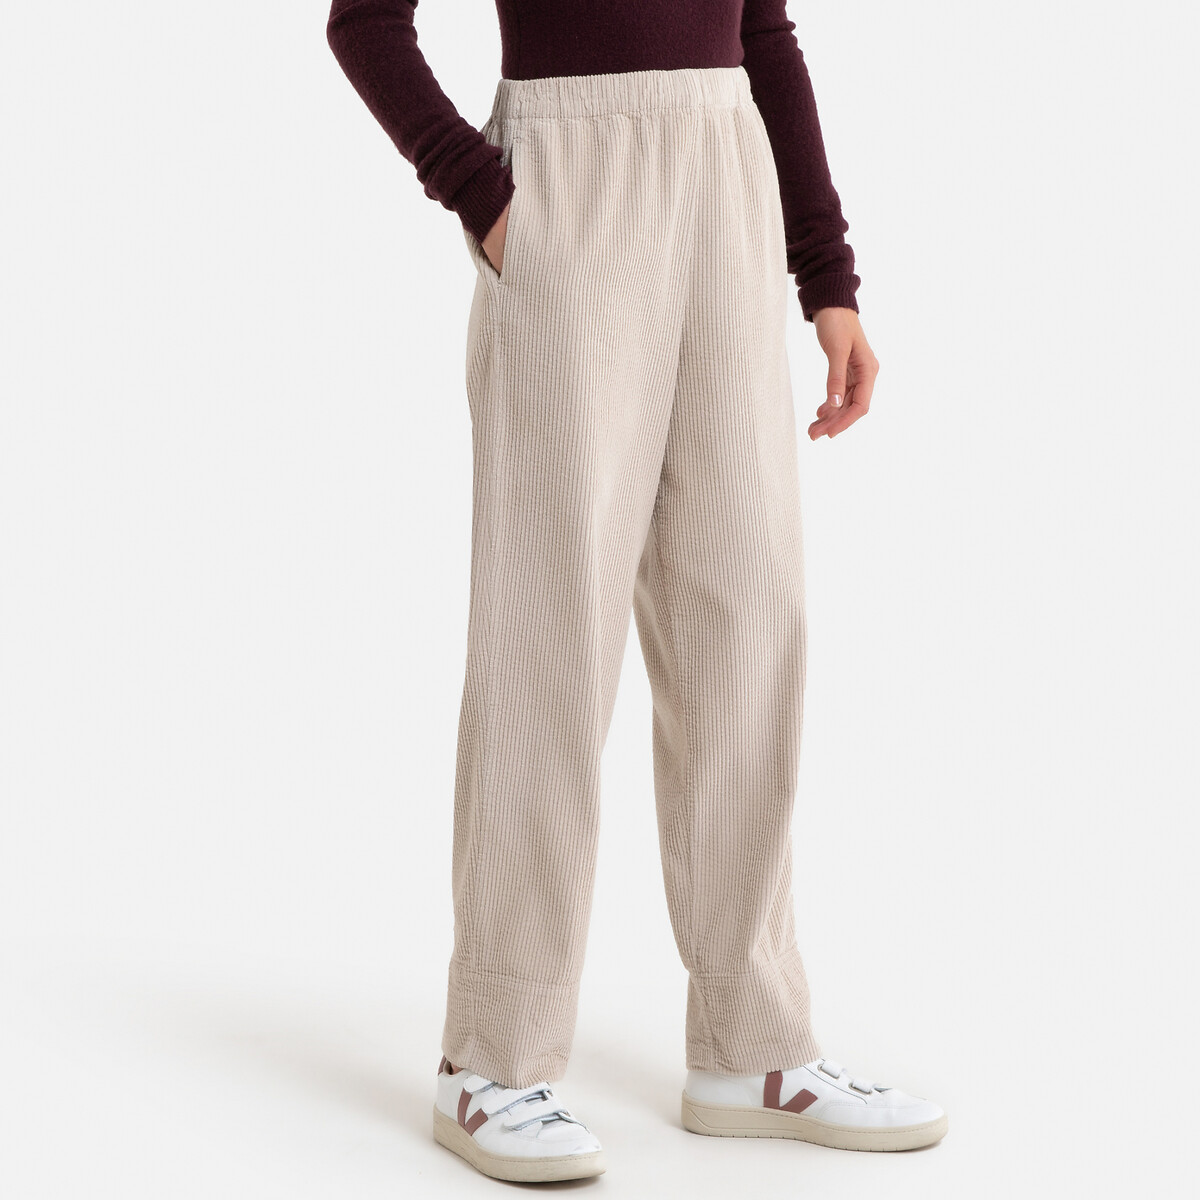 Купить брендовые женские брюки по привлекательной цене – заказать брюкипремиум класса для женщин в каталоге интернет-магазина